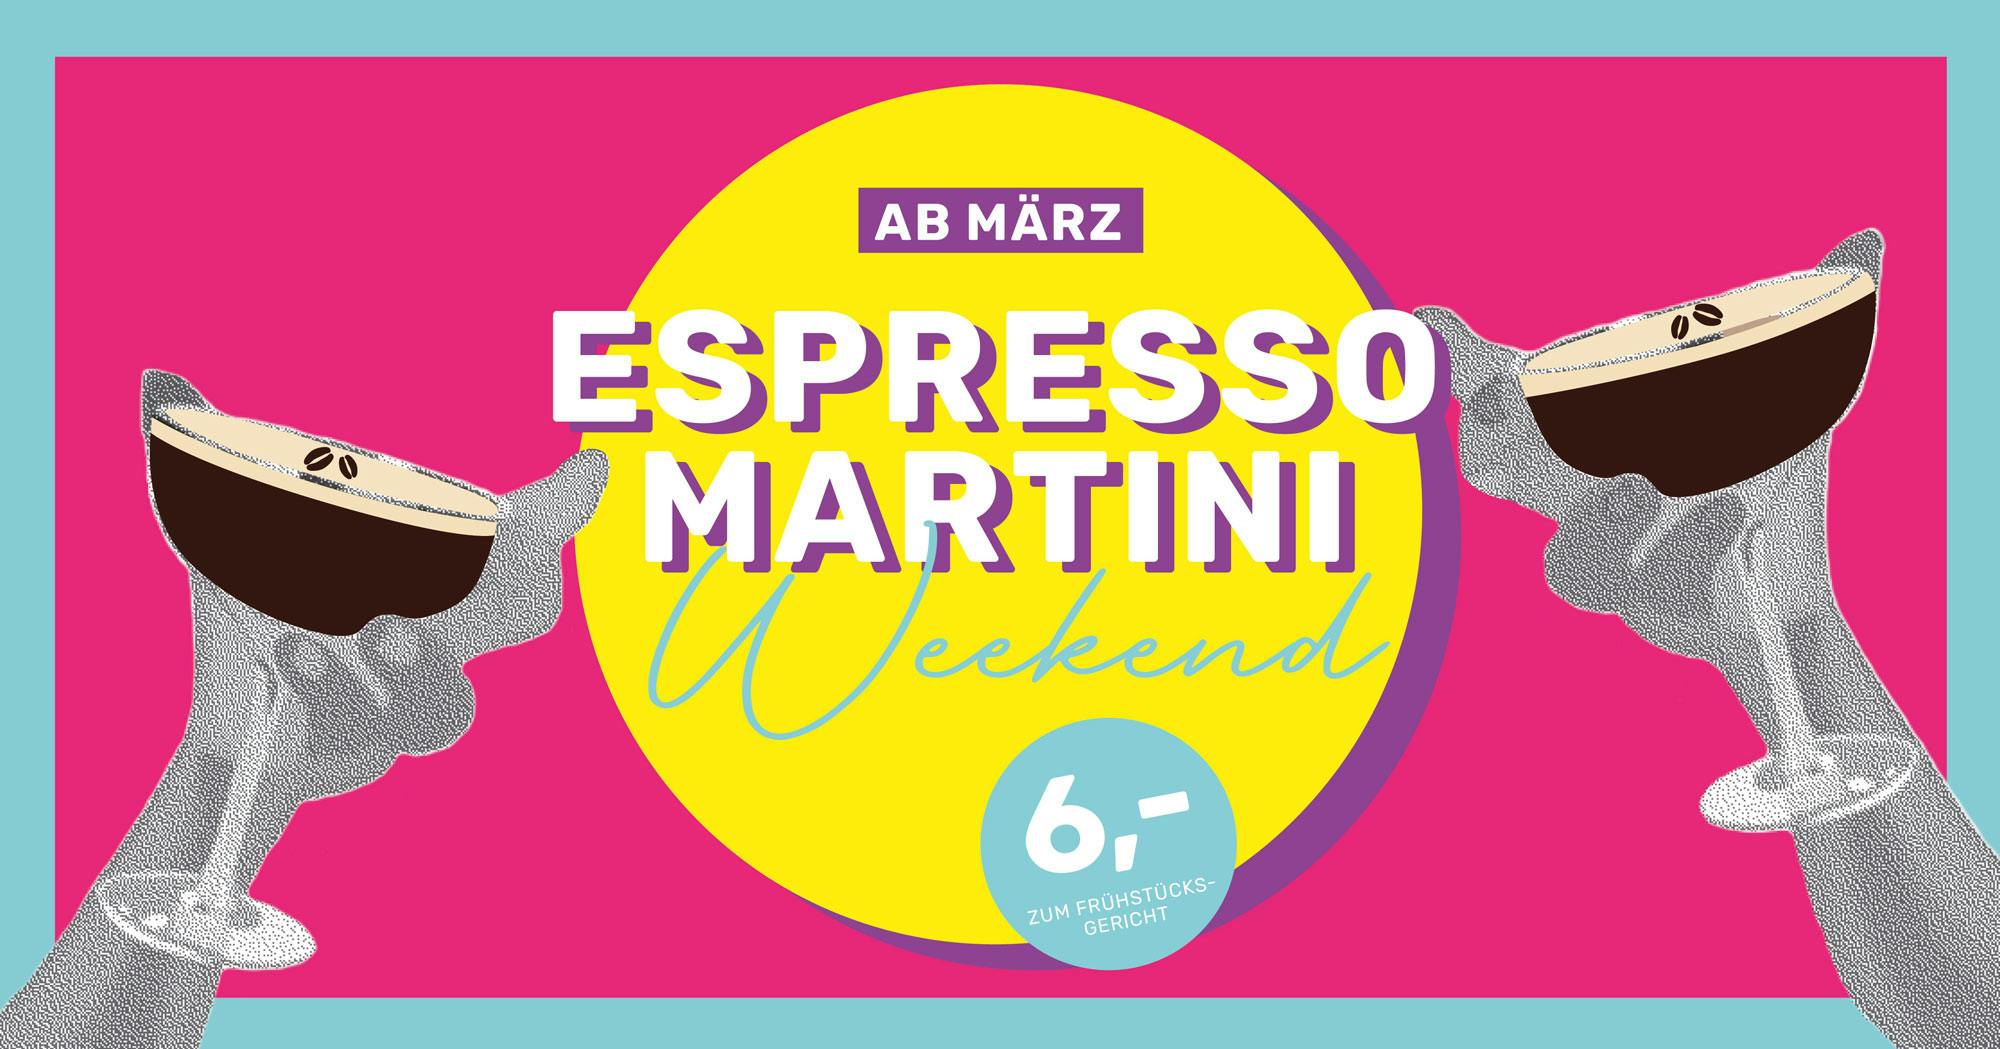 ST. LOUIS Breakfast | Espresso Martini Weekend